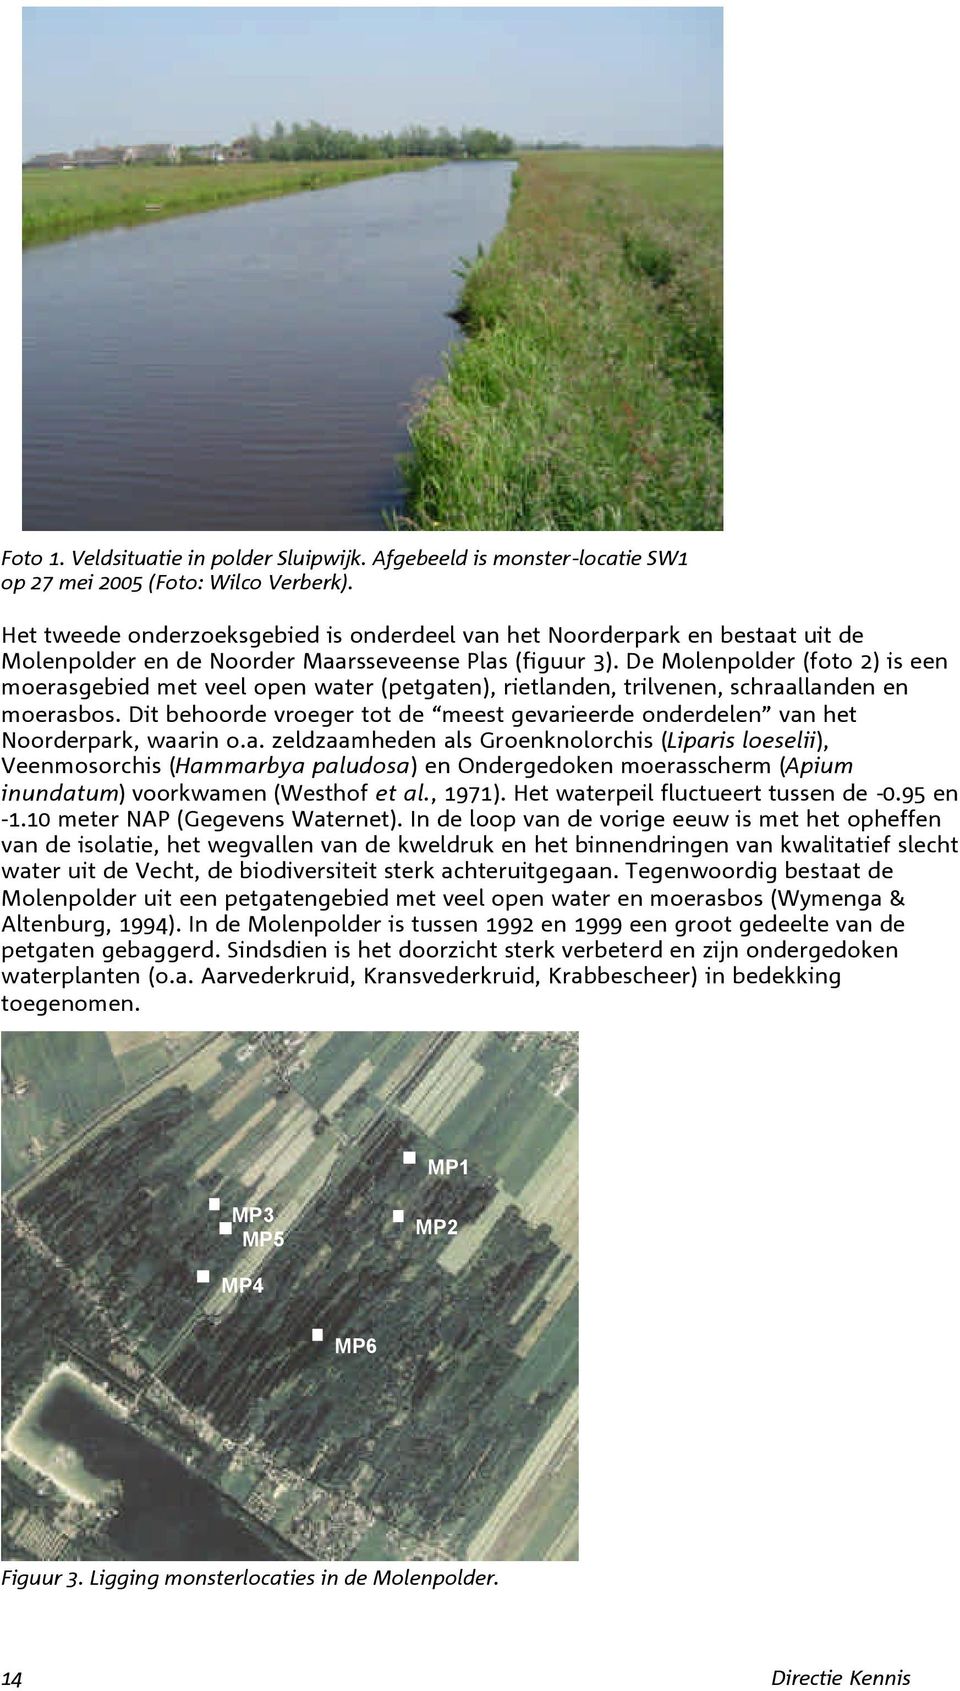 De Molenpolder (foto 2) is een moerasgebied met veel open water (petgaten), rietlanden, trilvenen, schraallanden en moerasbos.